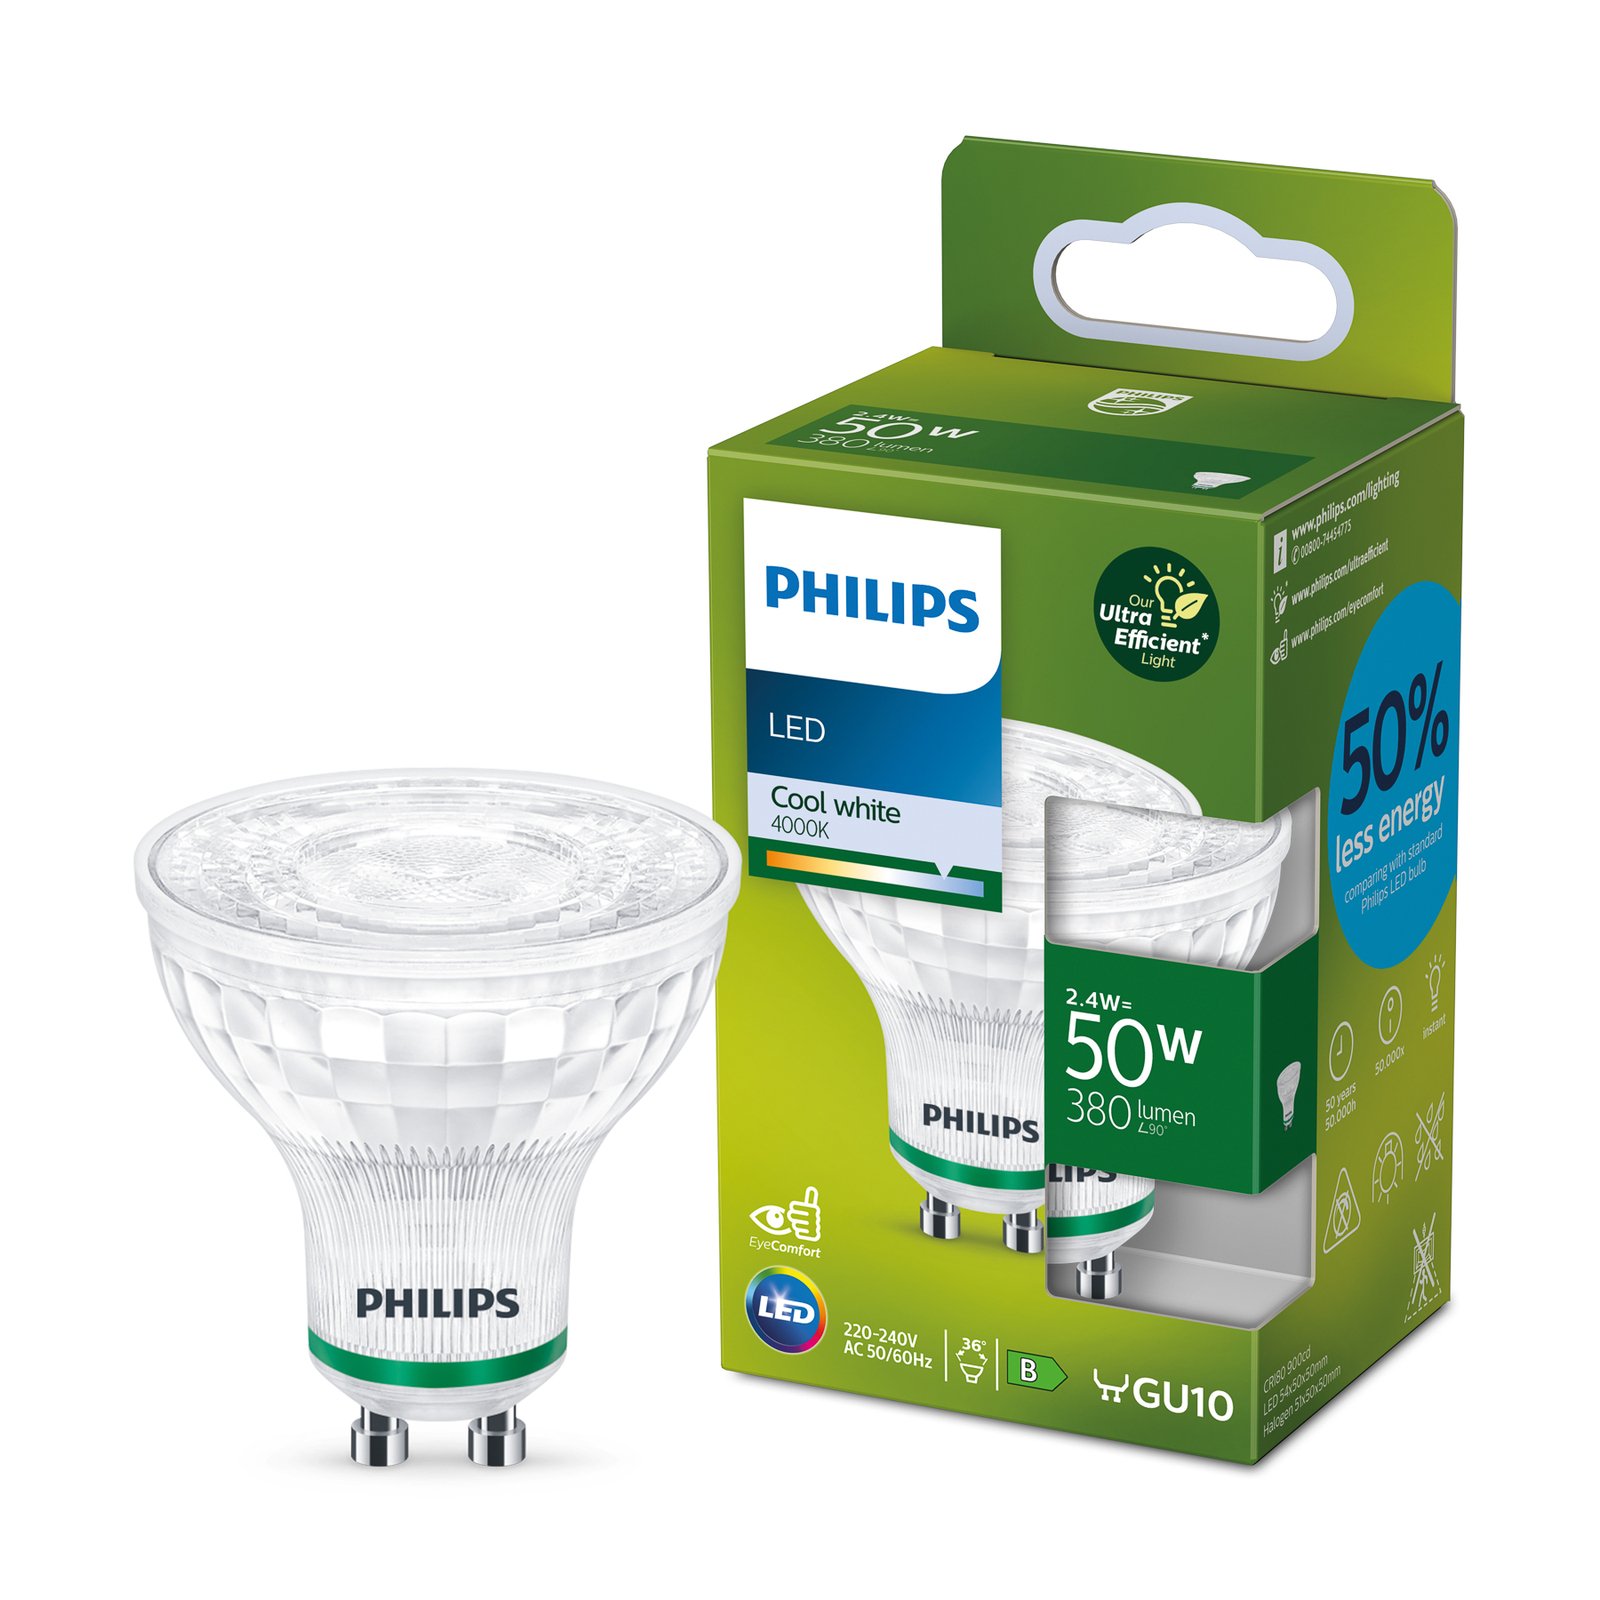 Philips LED reflector GU10 2,4W 380lm 36° 4.000K